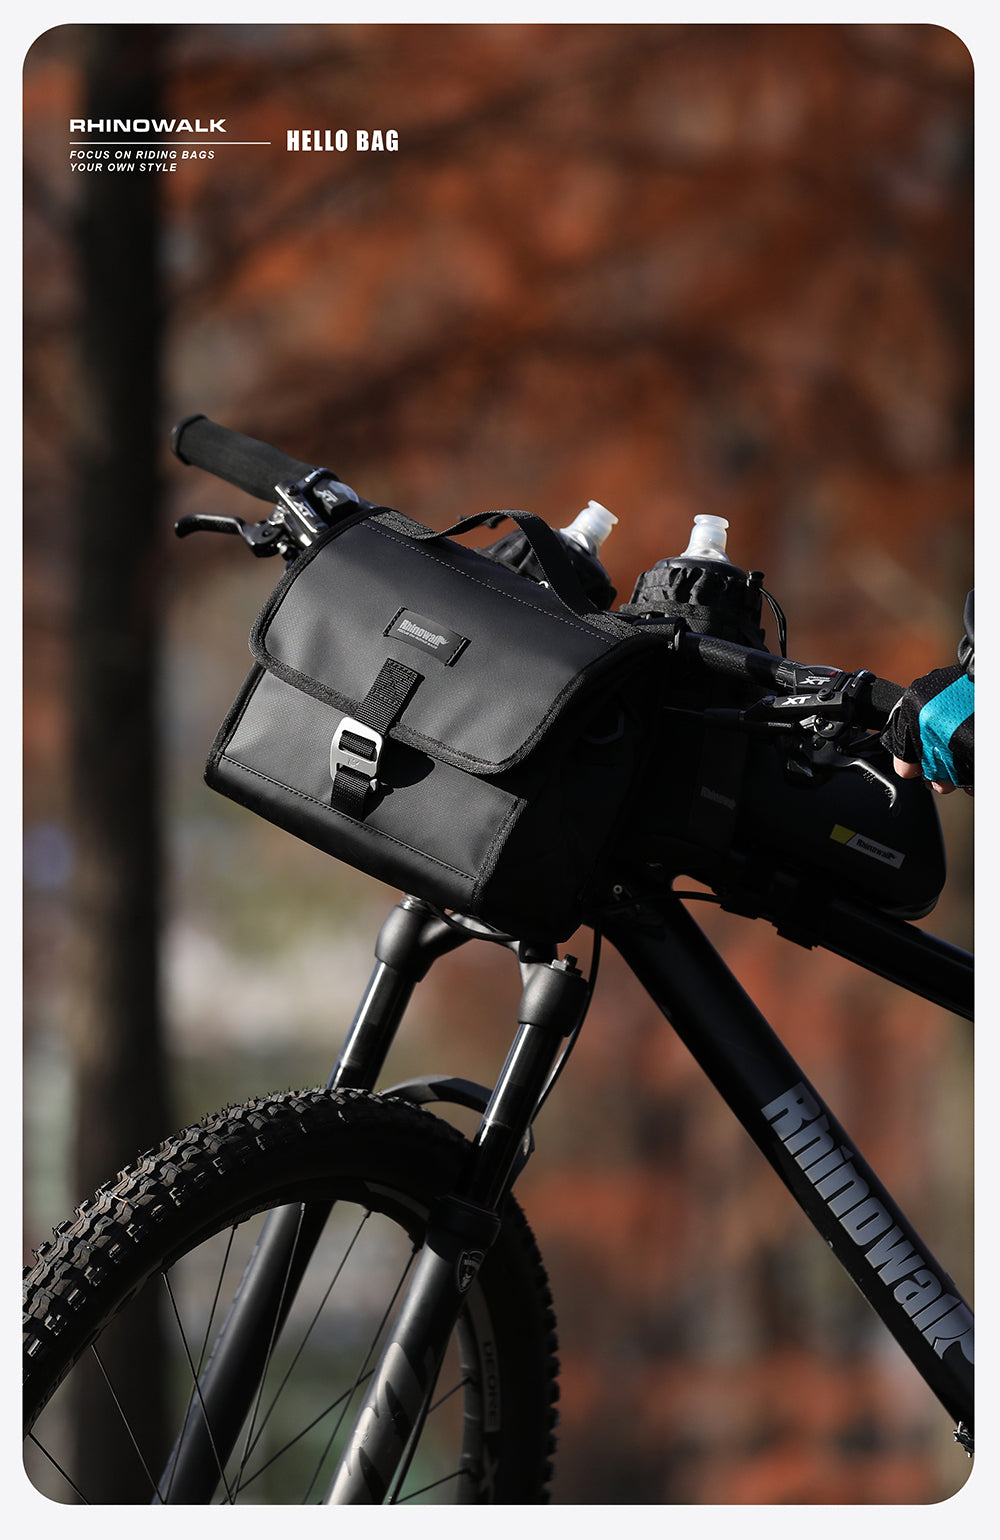 Bike Handlebar Bag - Common/Thermobag